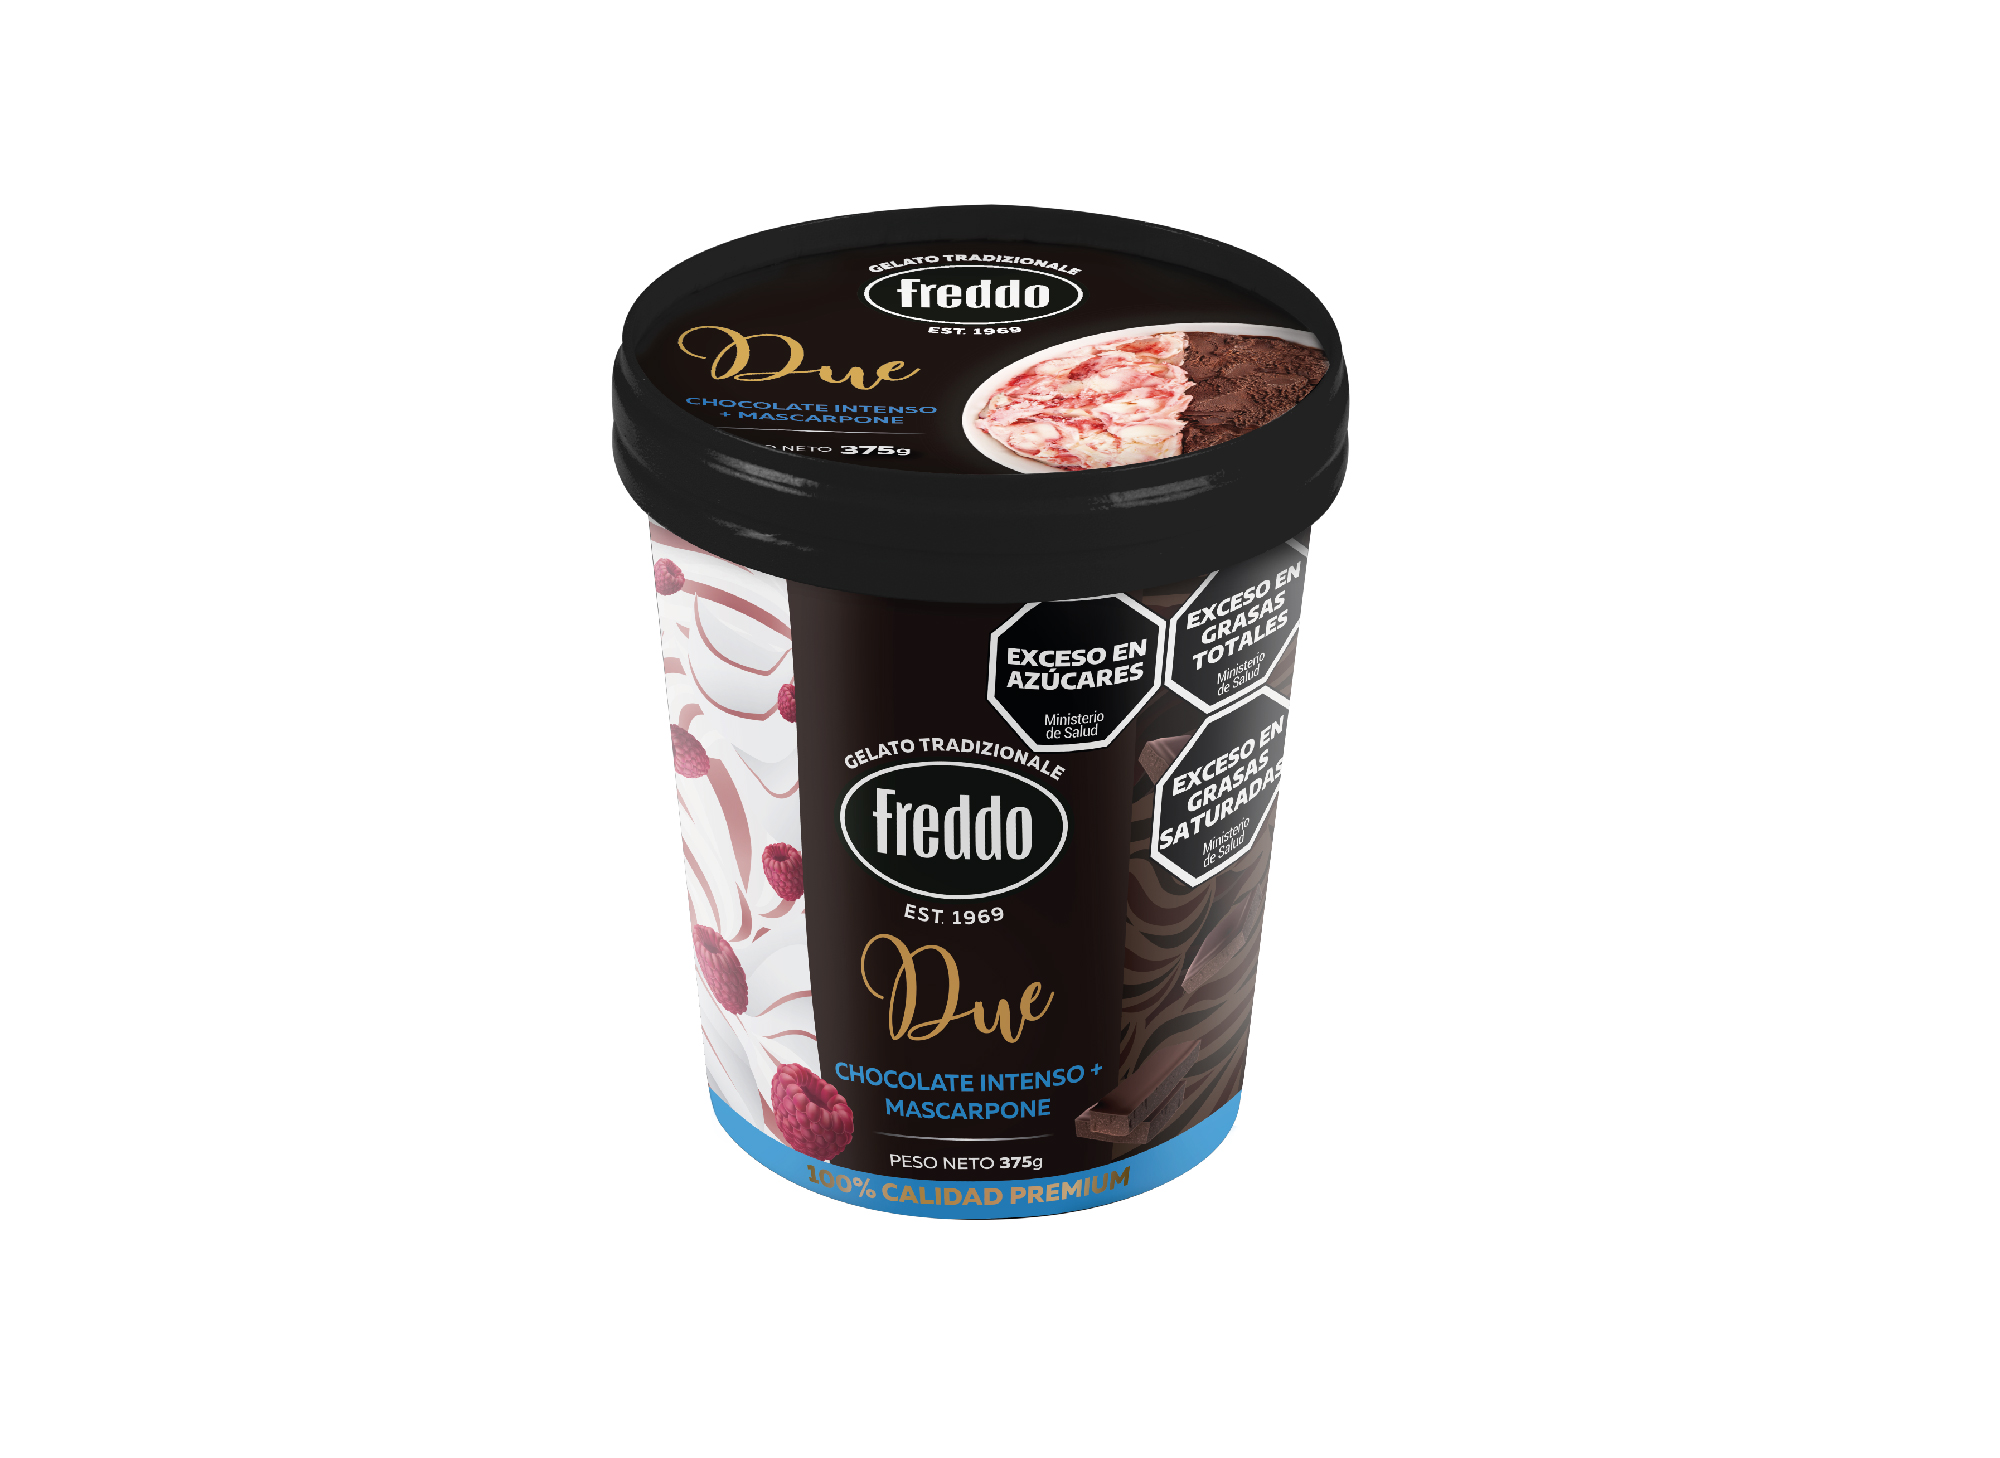 helado de chocolate intenso y mascarpone